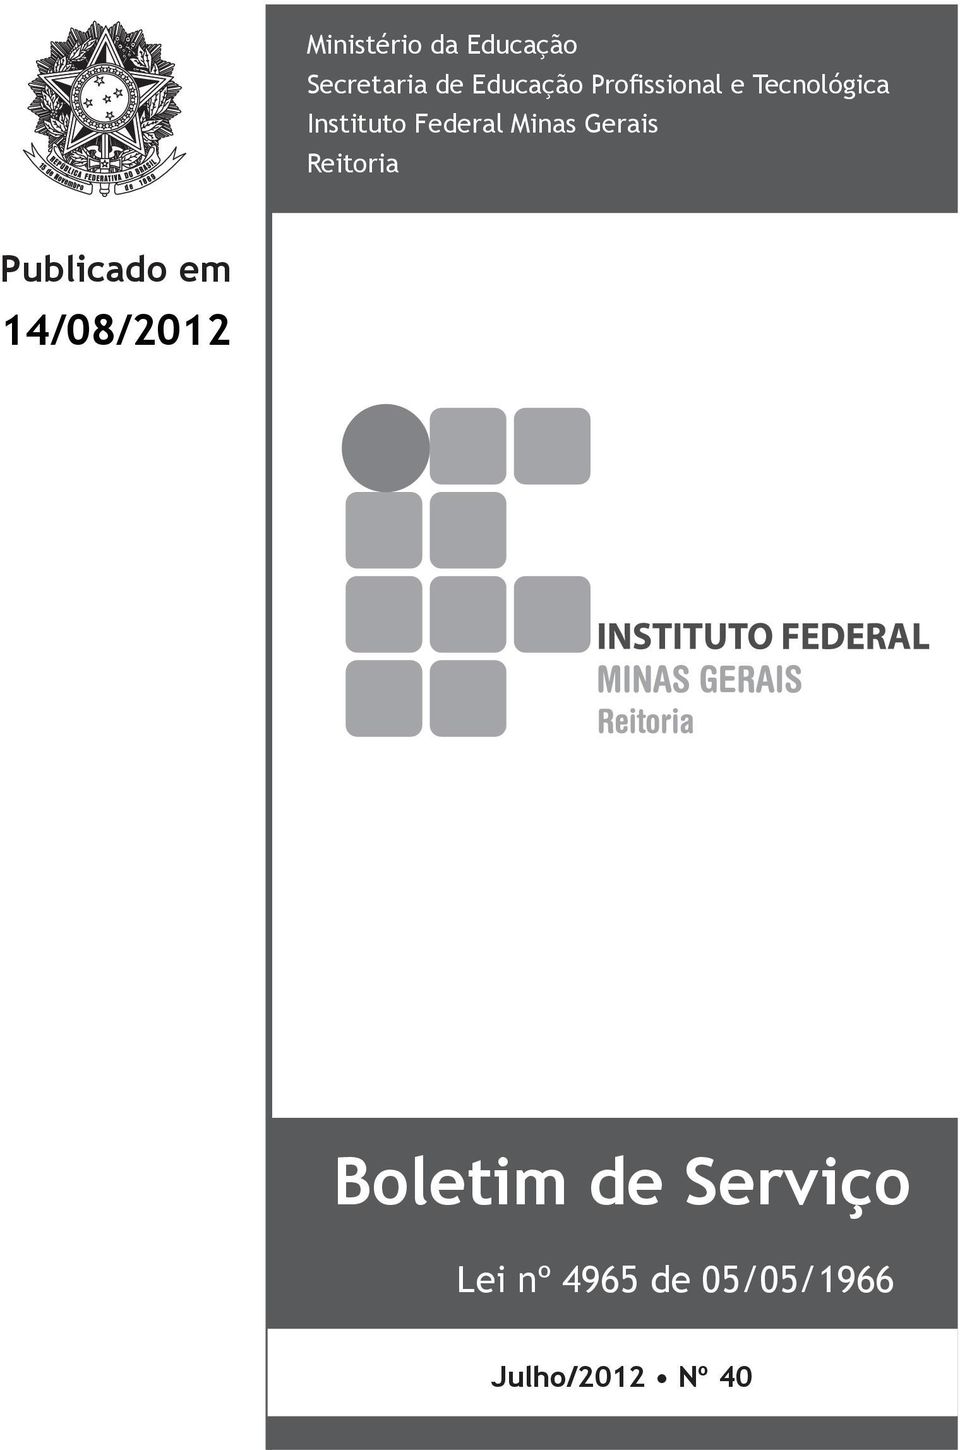 Minas Gerais Reitoria Publicado em 14/08/2012